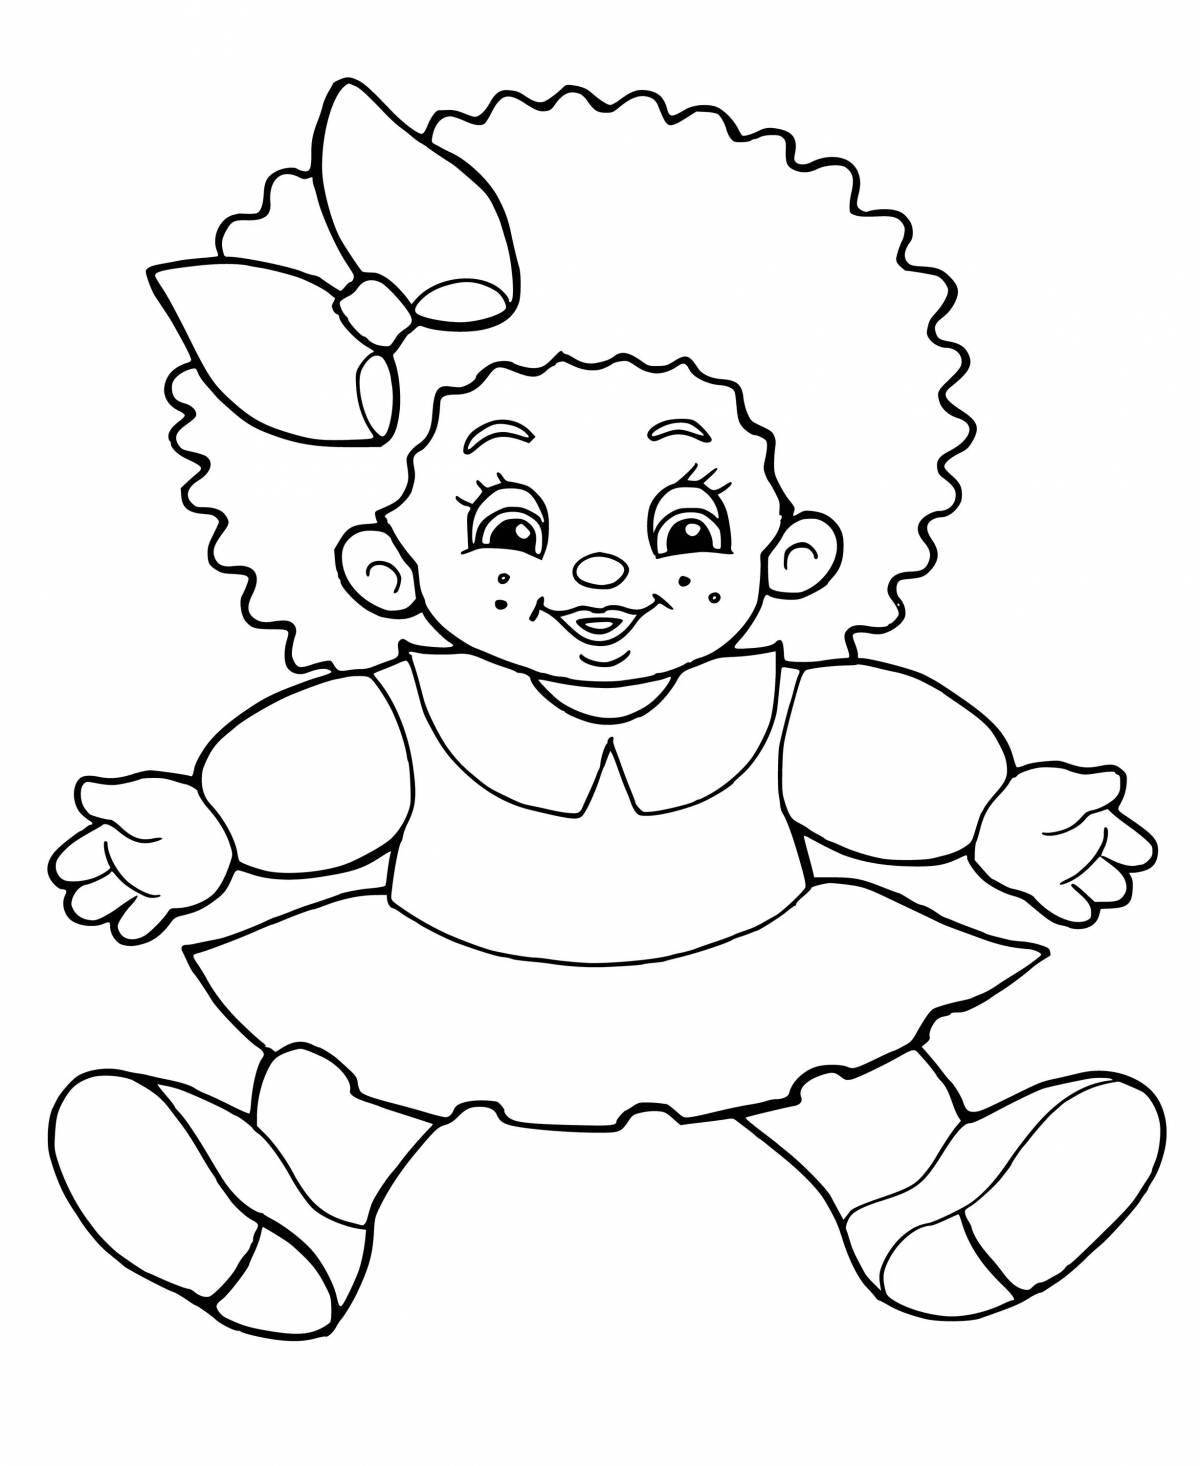 Яркая кукольная раскраска для детей 2-3 лет